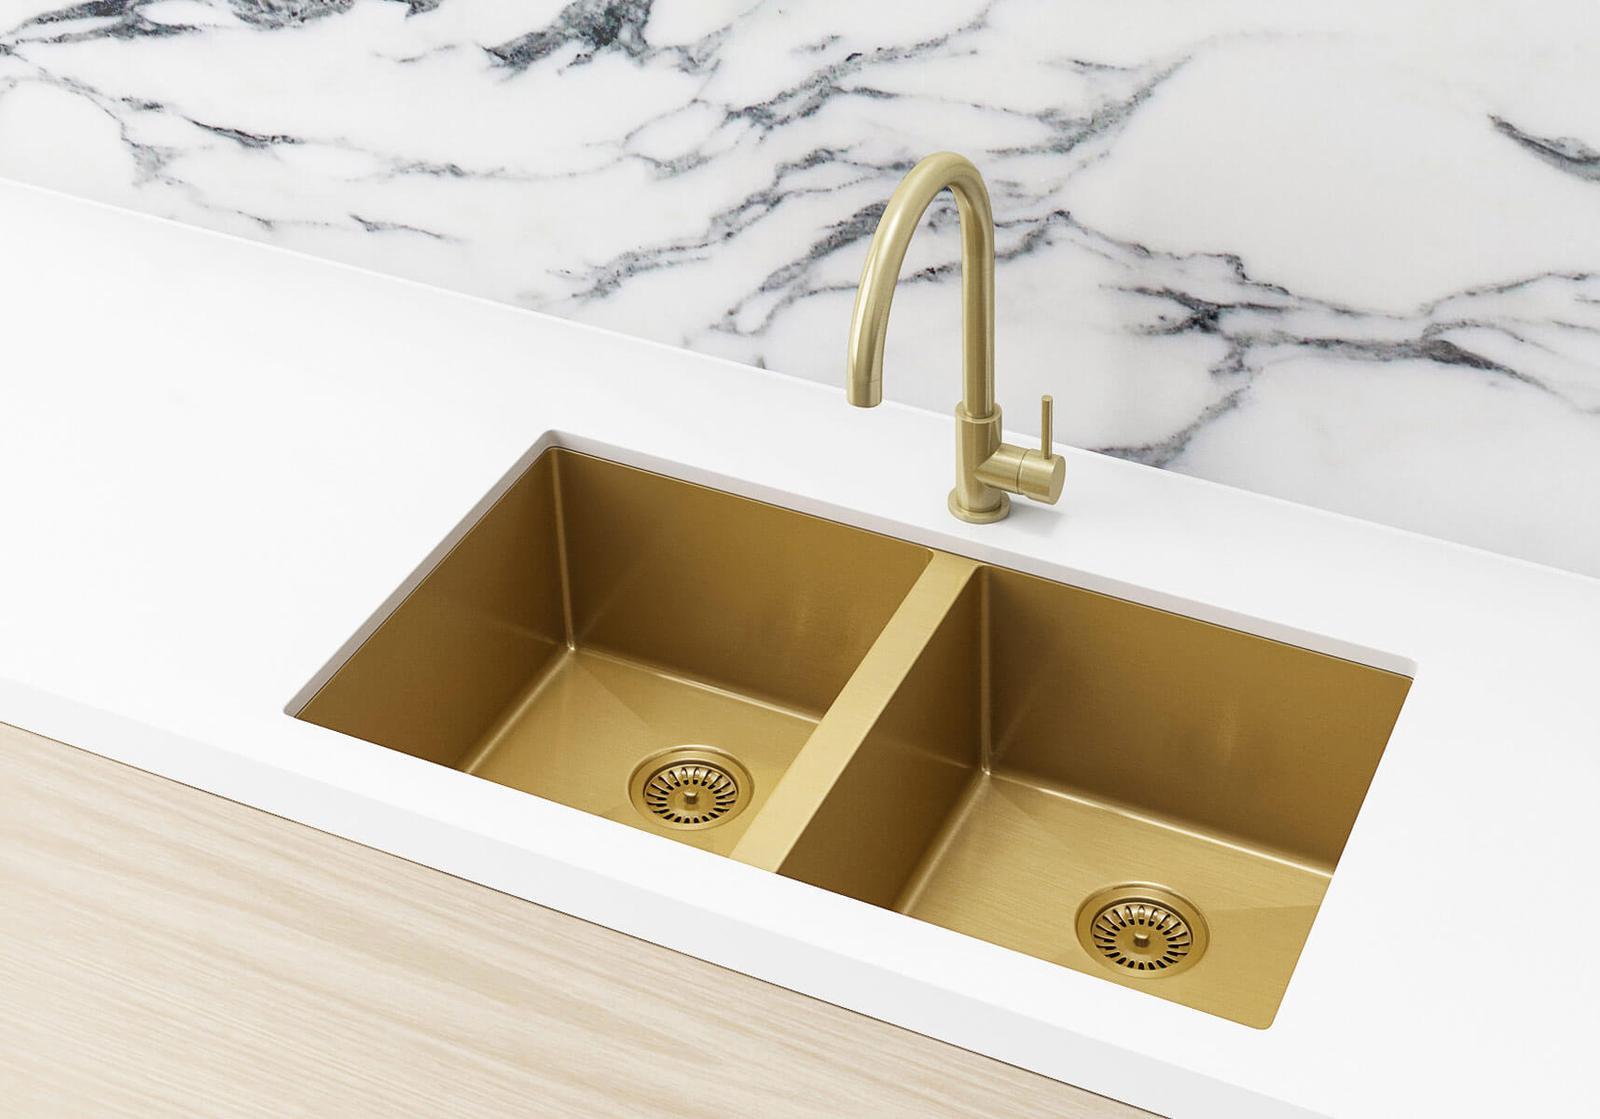 bronze kitchen sink grids